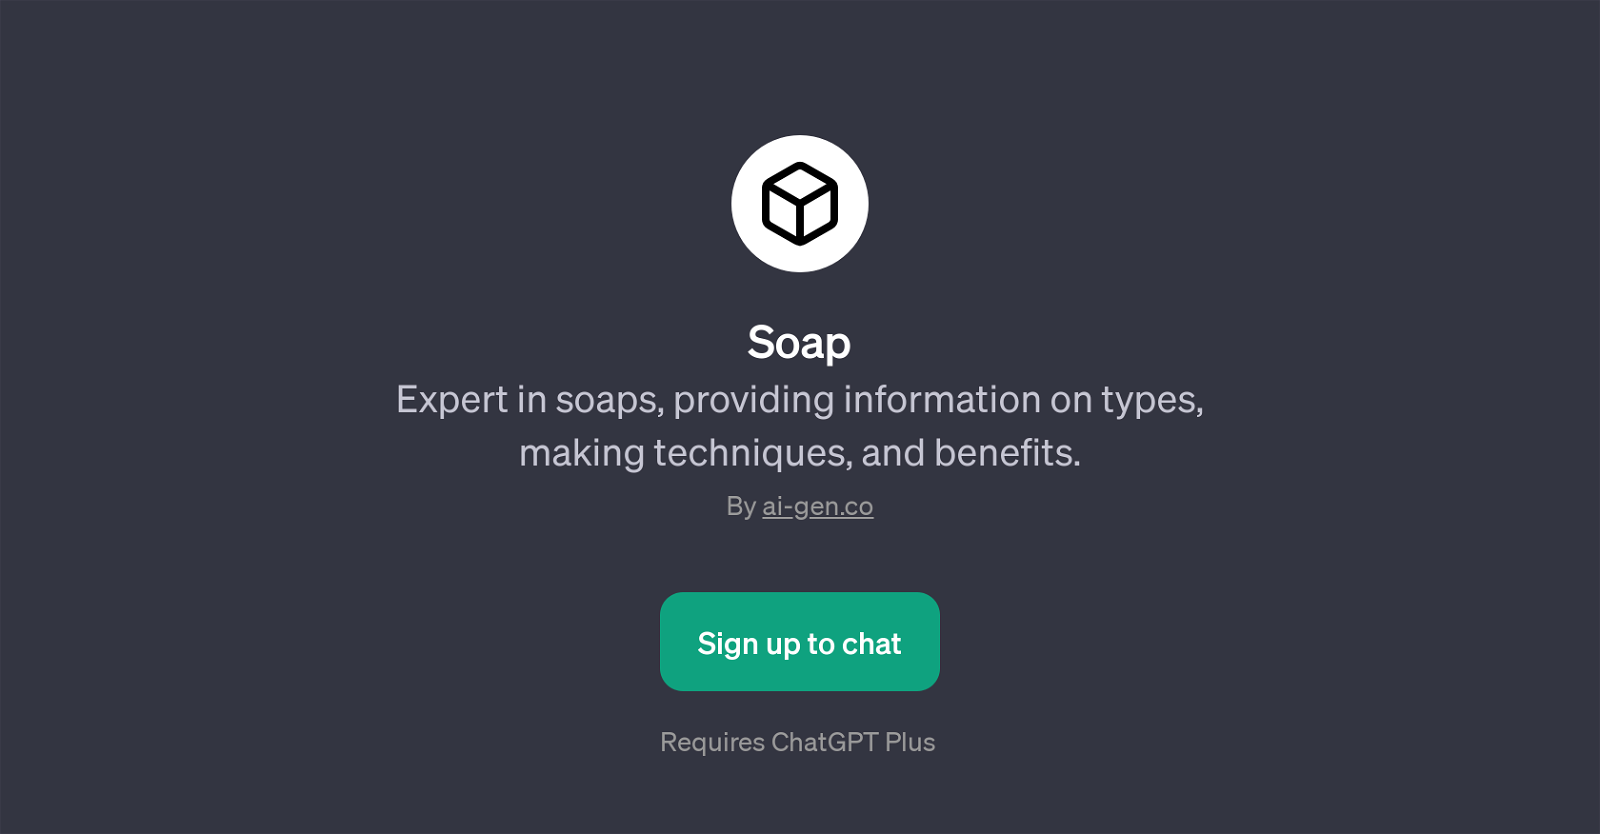 SoapPage website